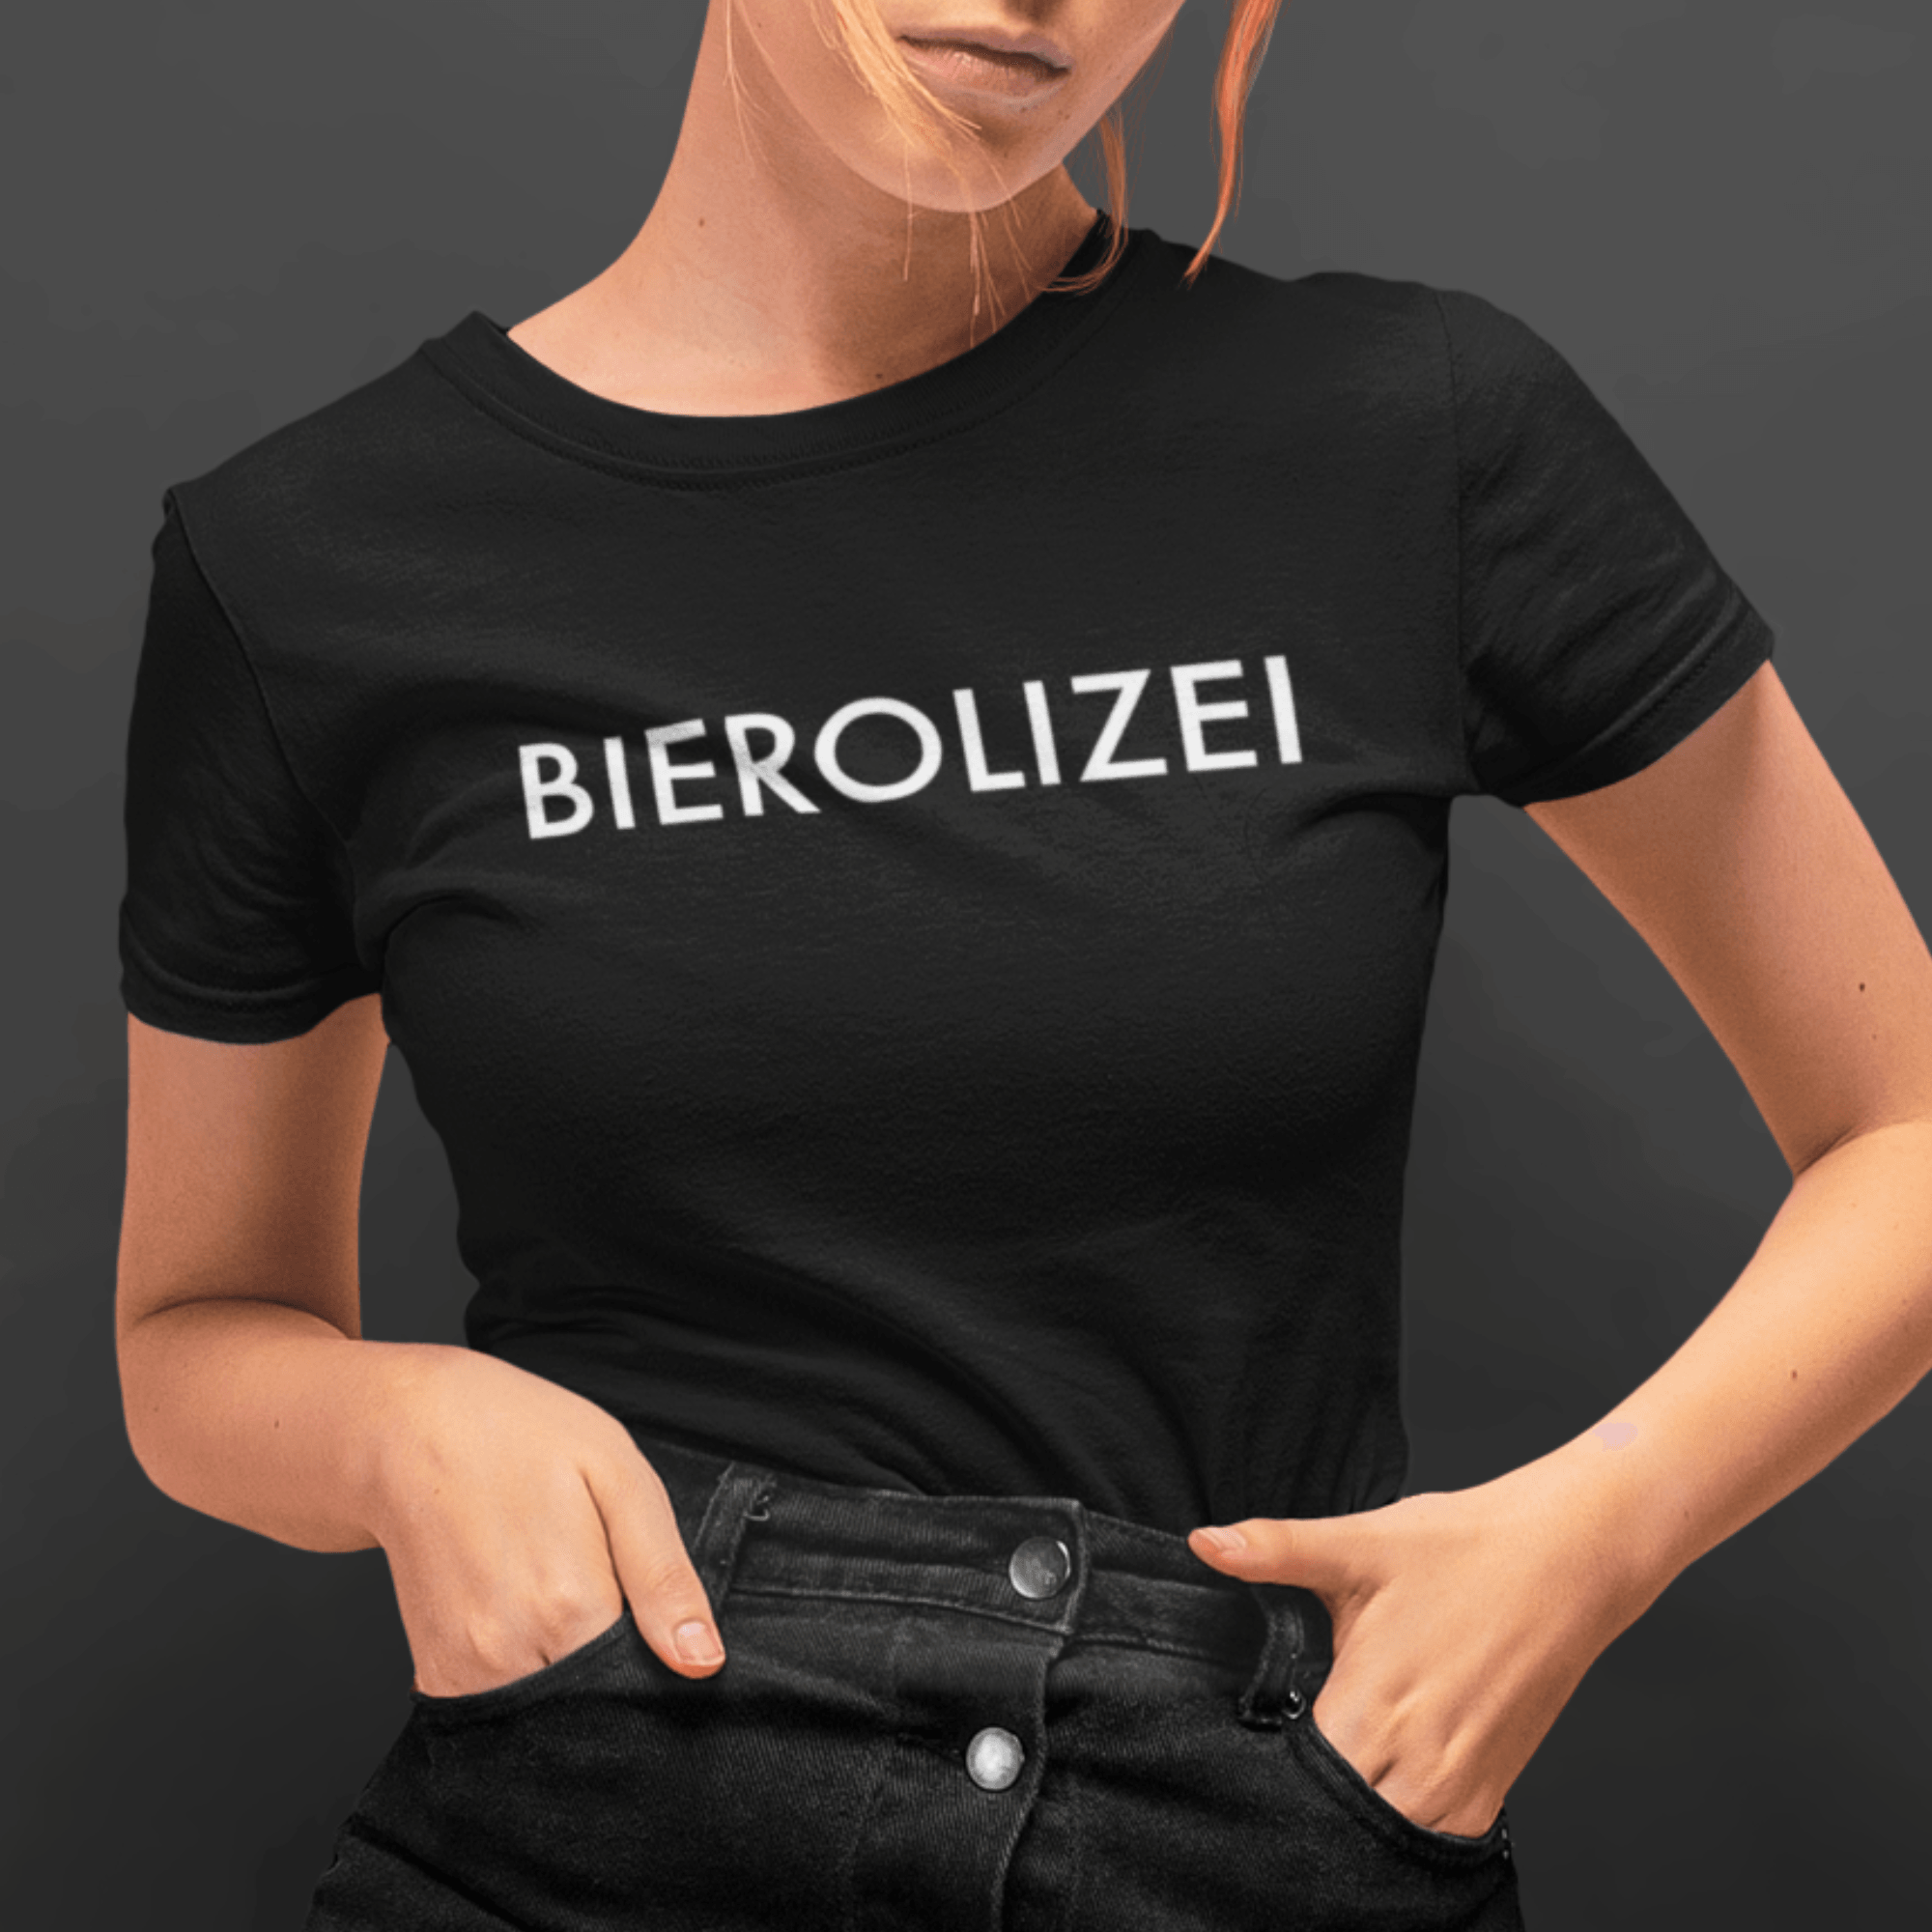 BIEROLIZEI - Damen Premiumshirt - einschenken24.de